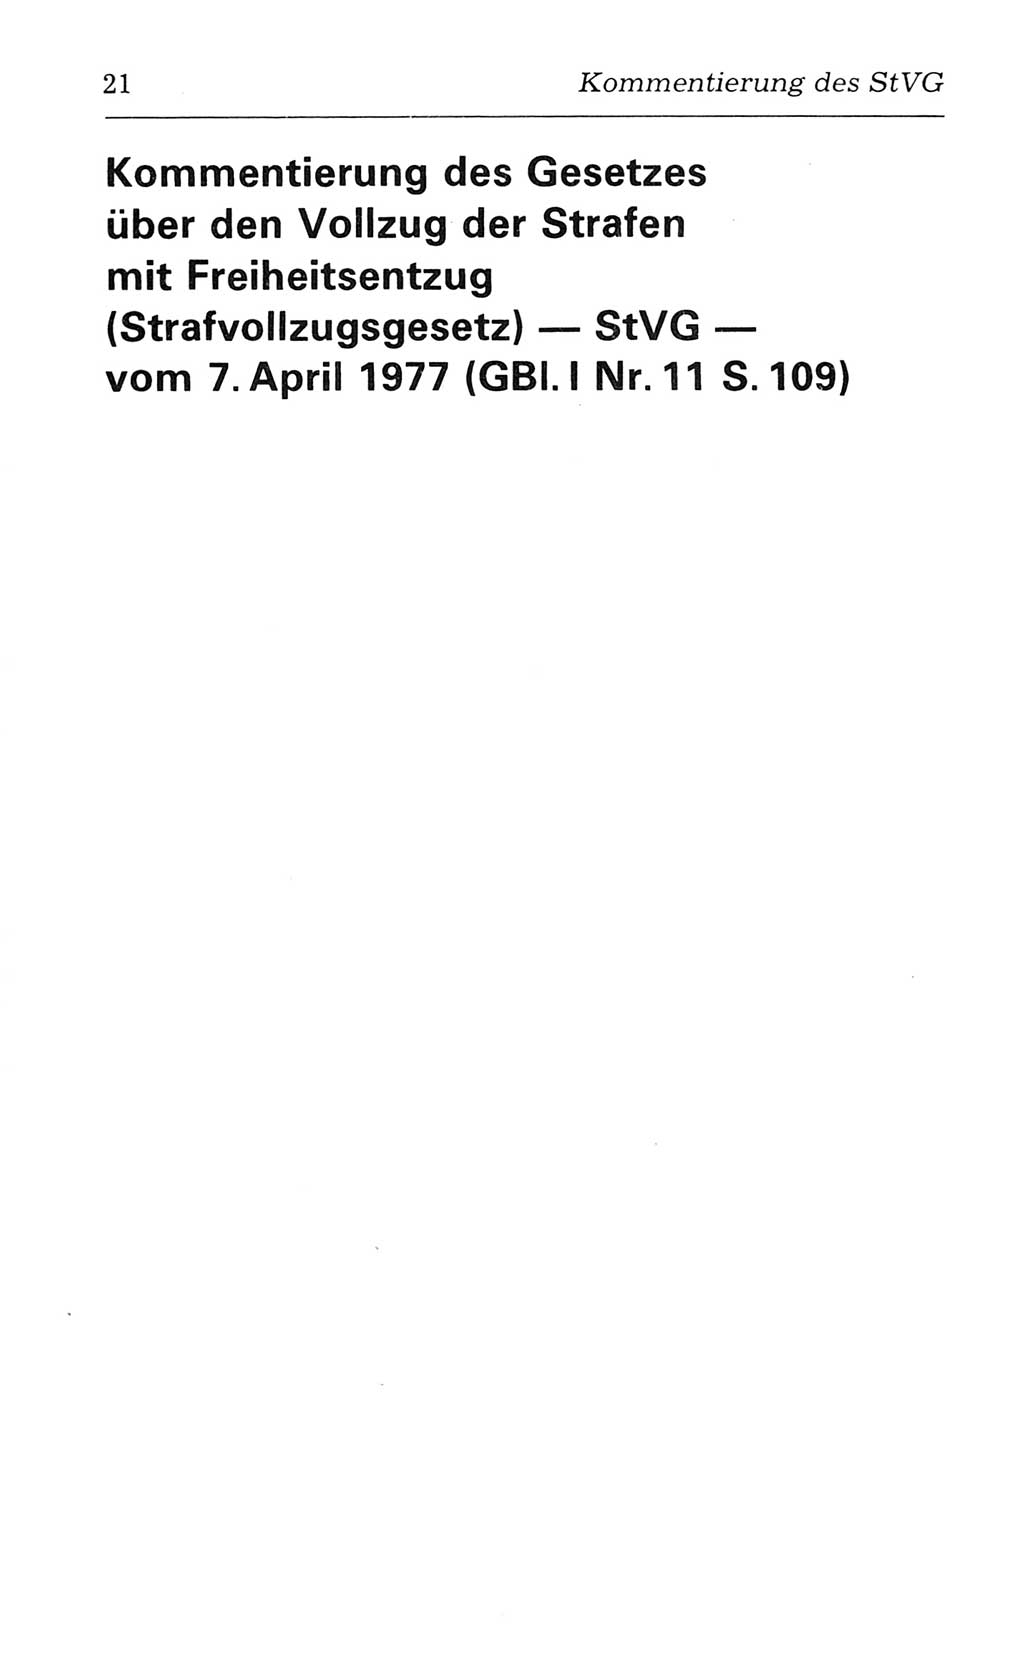 Kommentar zum Strafvollzugsgesetz [(StVG) Deutsche Demokratische Republik (DDR)] 1980, Seite 21 (Komm. StVG DDR 1980, S. 21)